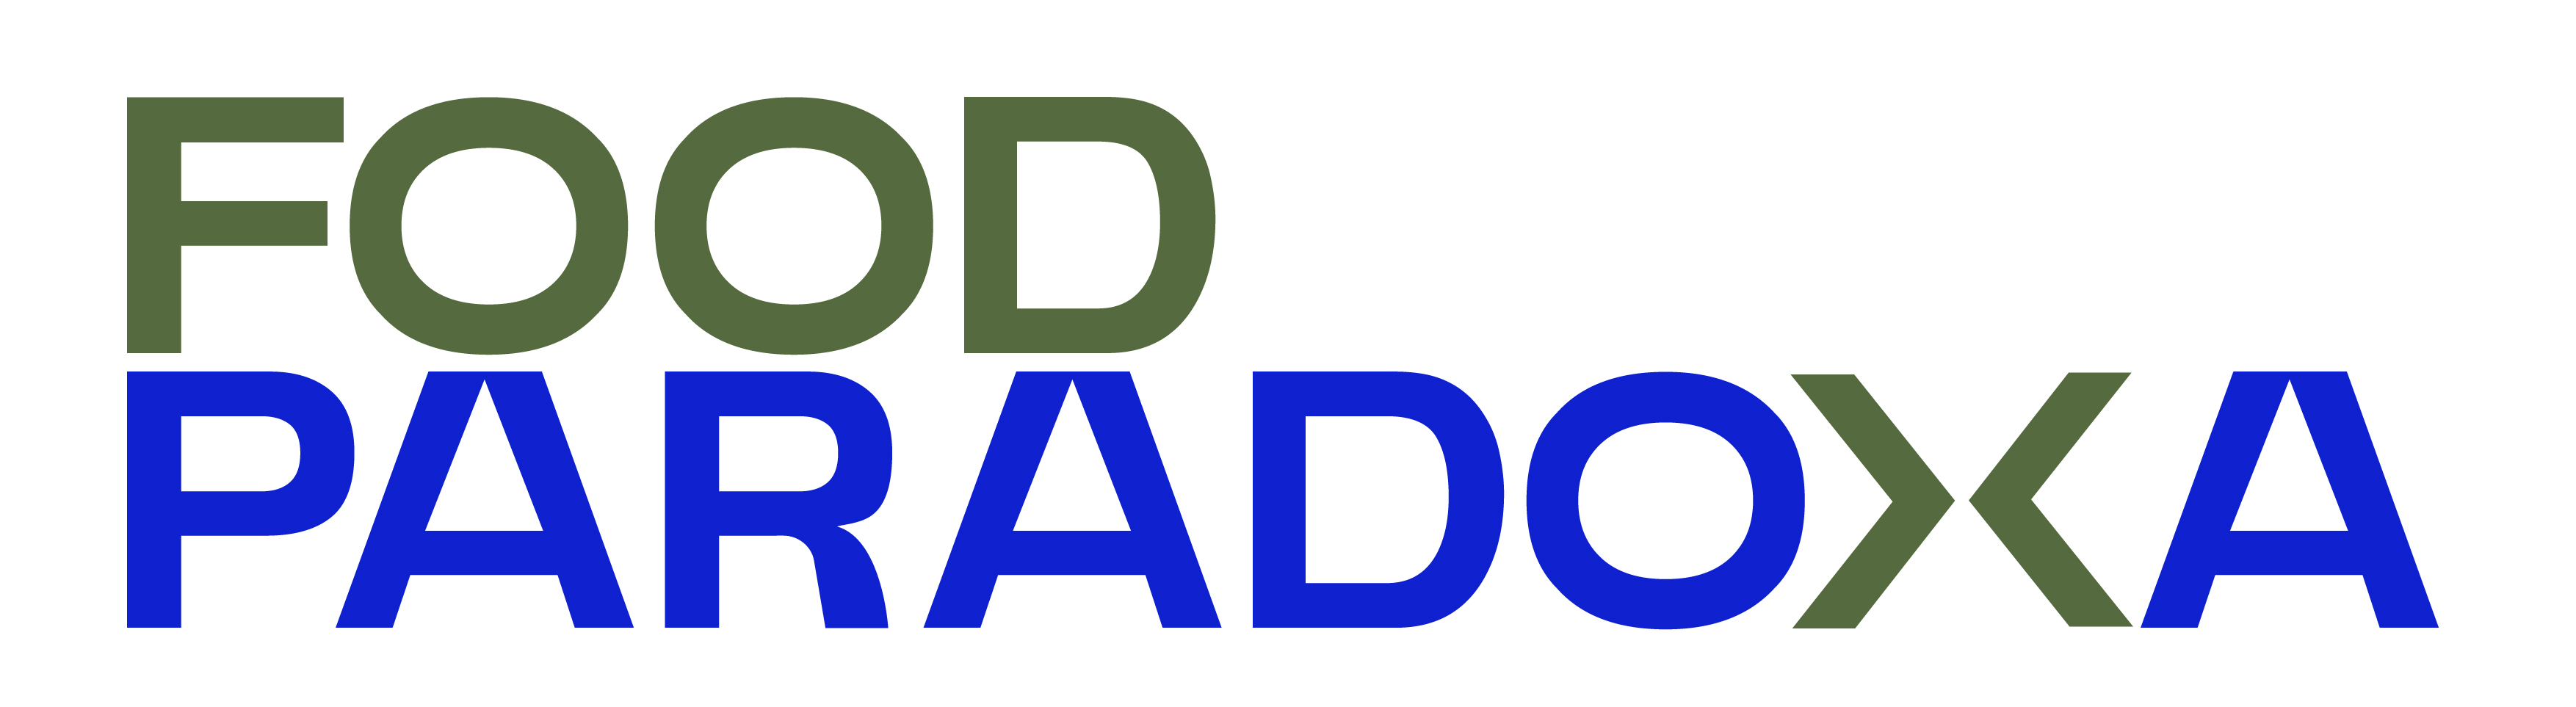 logo Food paradoxa